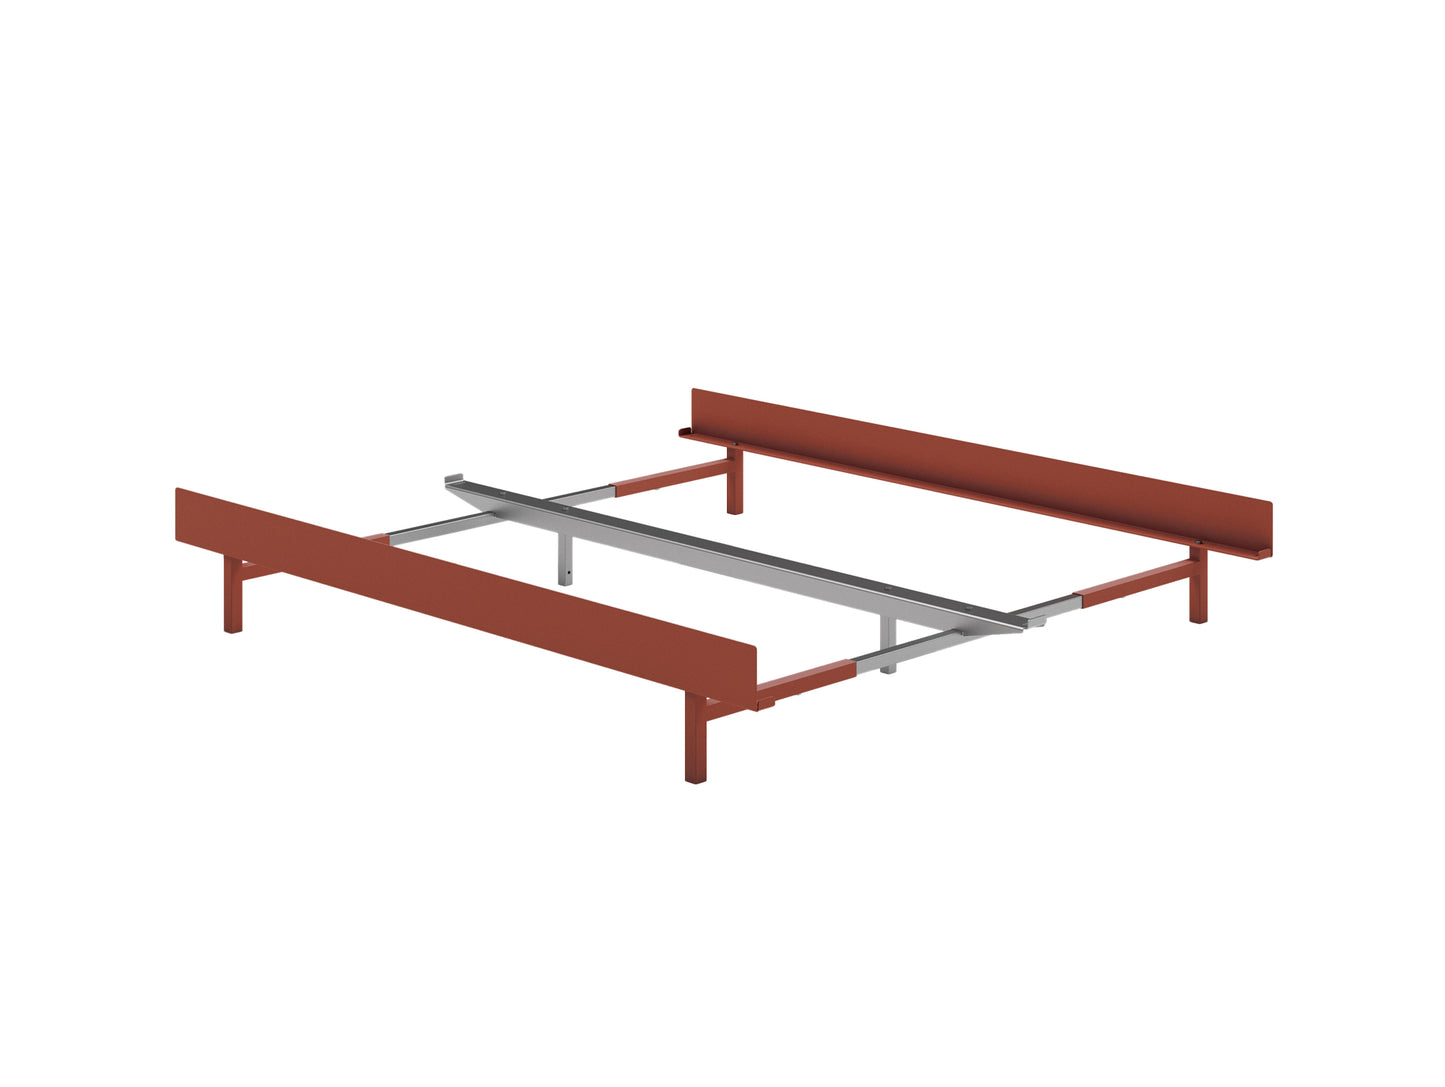 Moebe Expandable Bed - 90 to 180 cm / Terracotta / No Slats